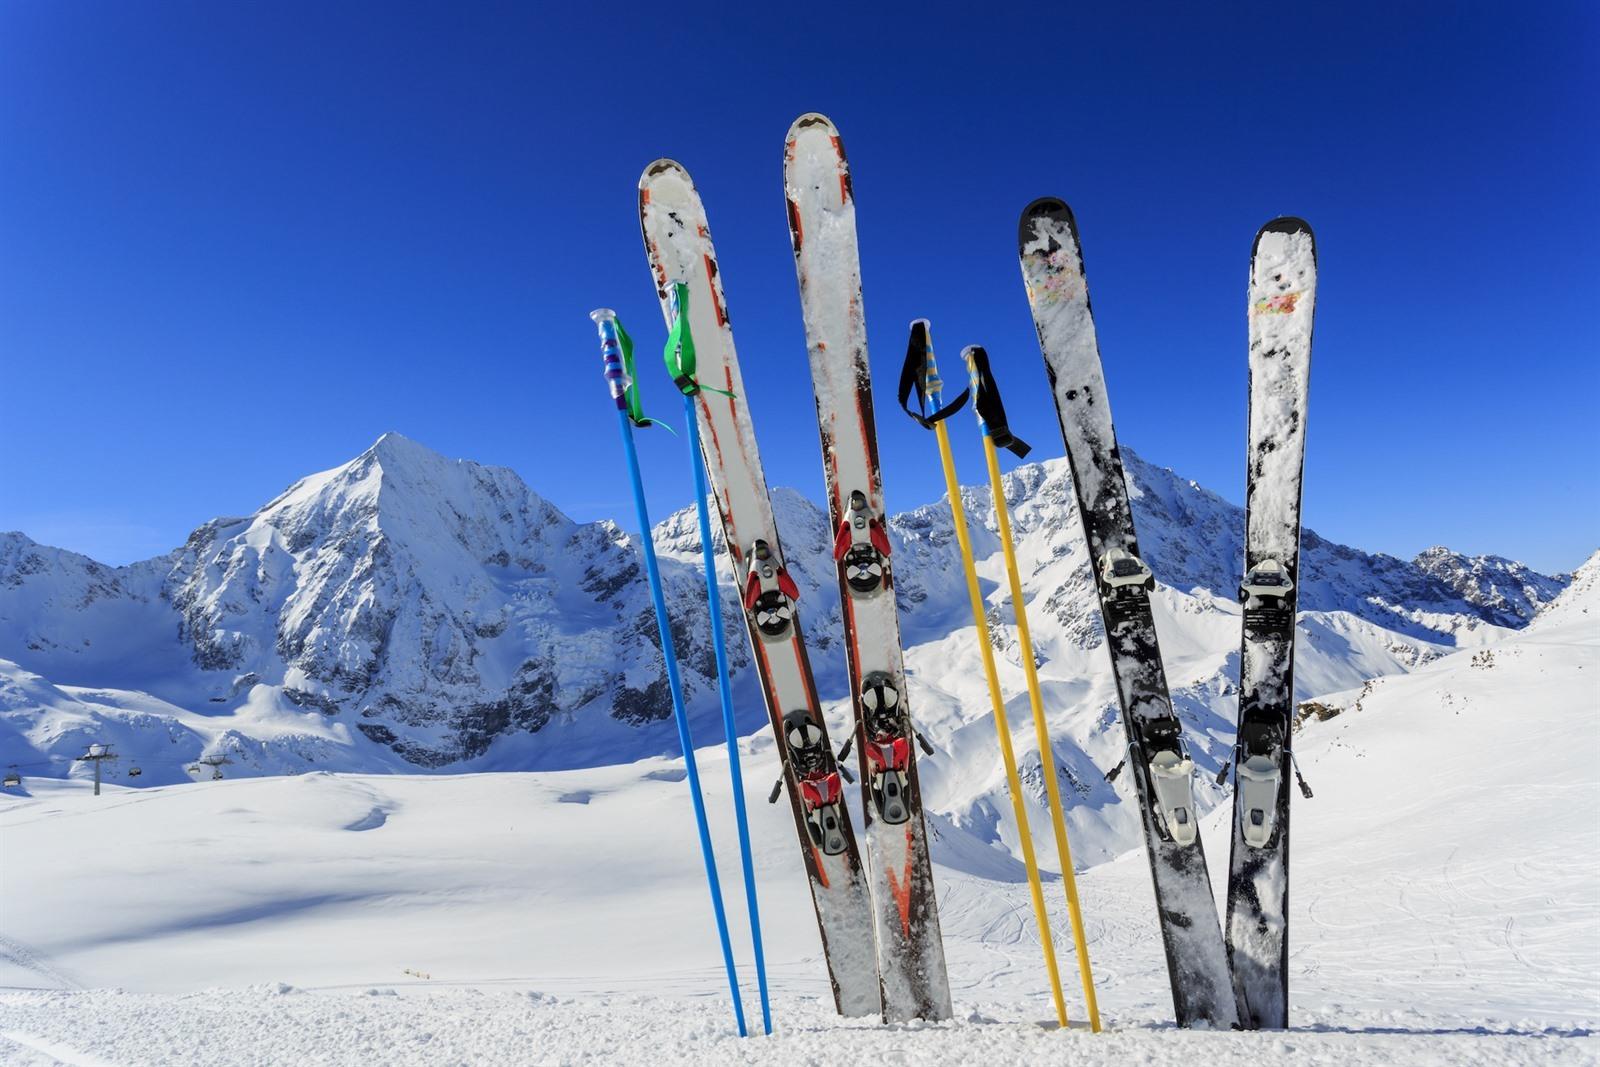 Genealogie Antagonisme Vlot Goedkoop op skivakantie in Europa? 15 x goedkope skigebieden